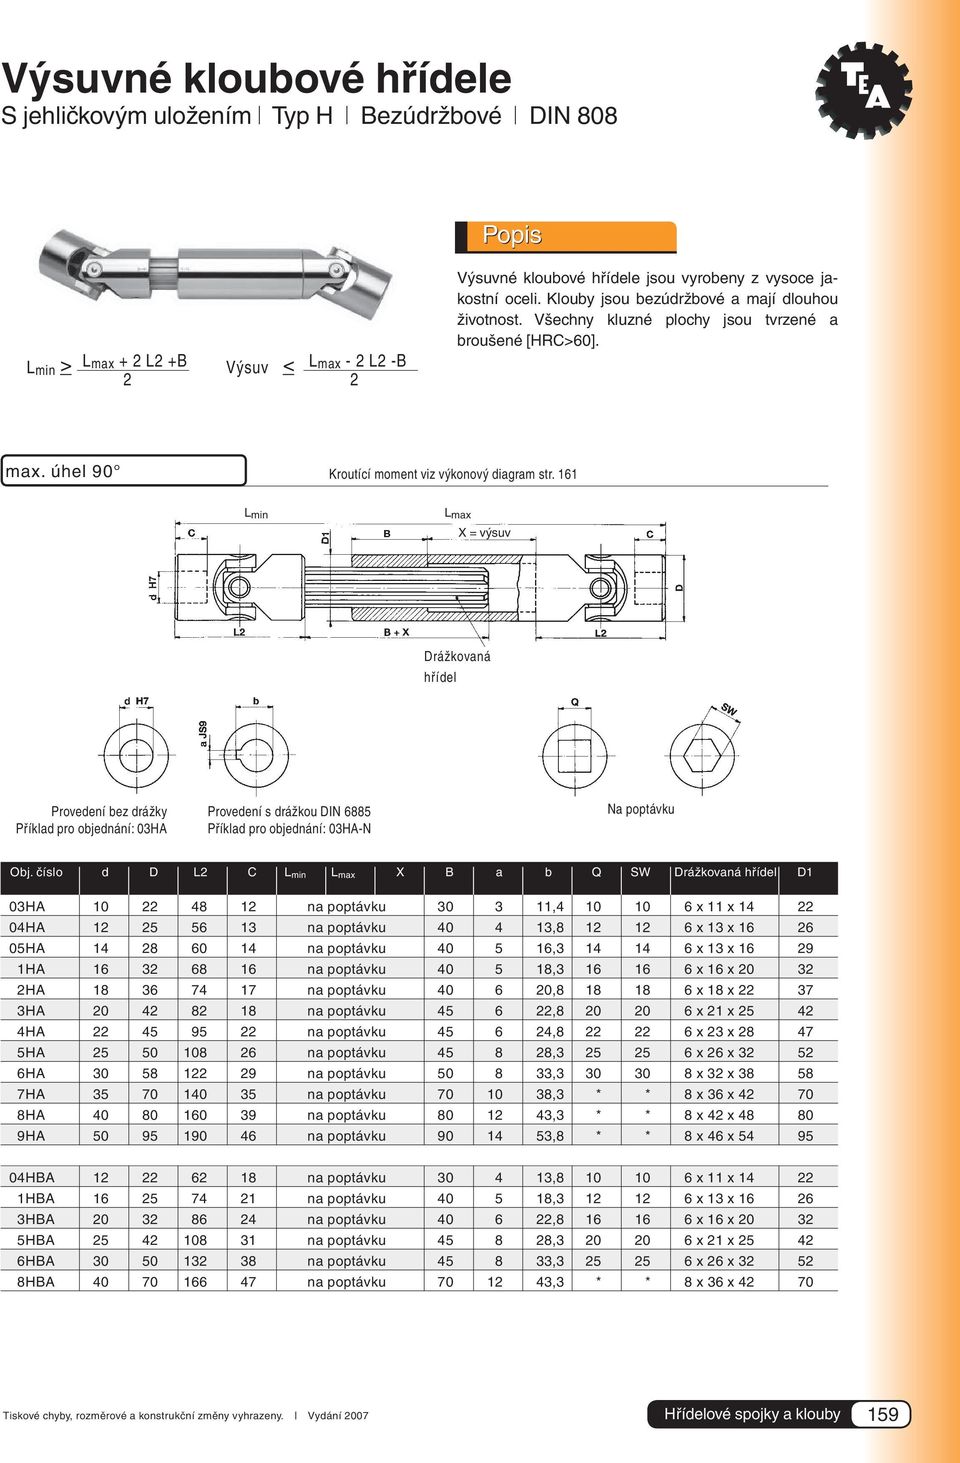 161 L min L max X = výsuv Drážkovaná hřídel Provedení bez drážky Příklad pro objednání: 03HA Provedení s drážkou DIN 6885 Příklad pro objednání: 03HA-N Na poptávku Obj.